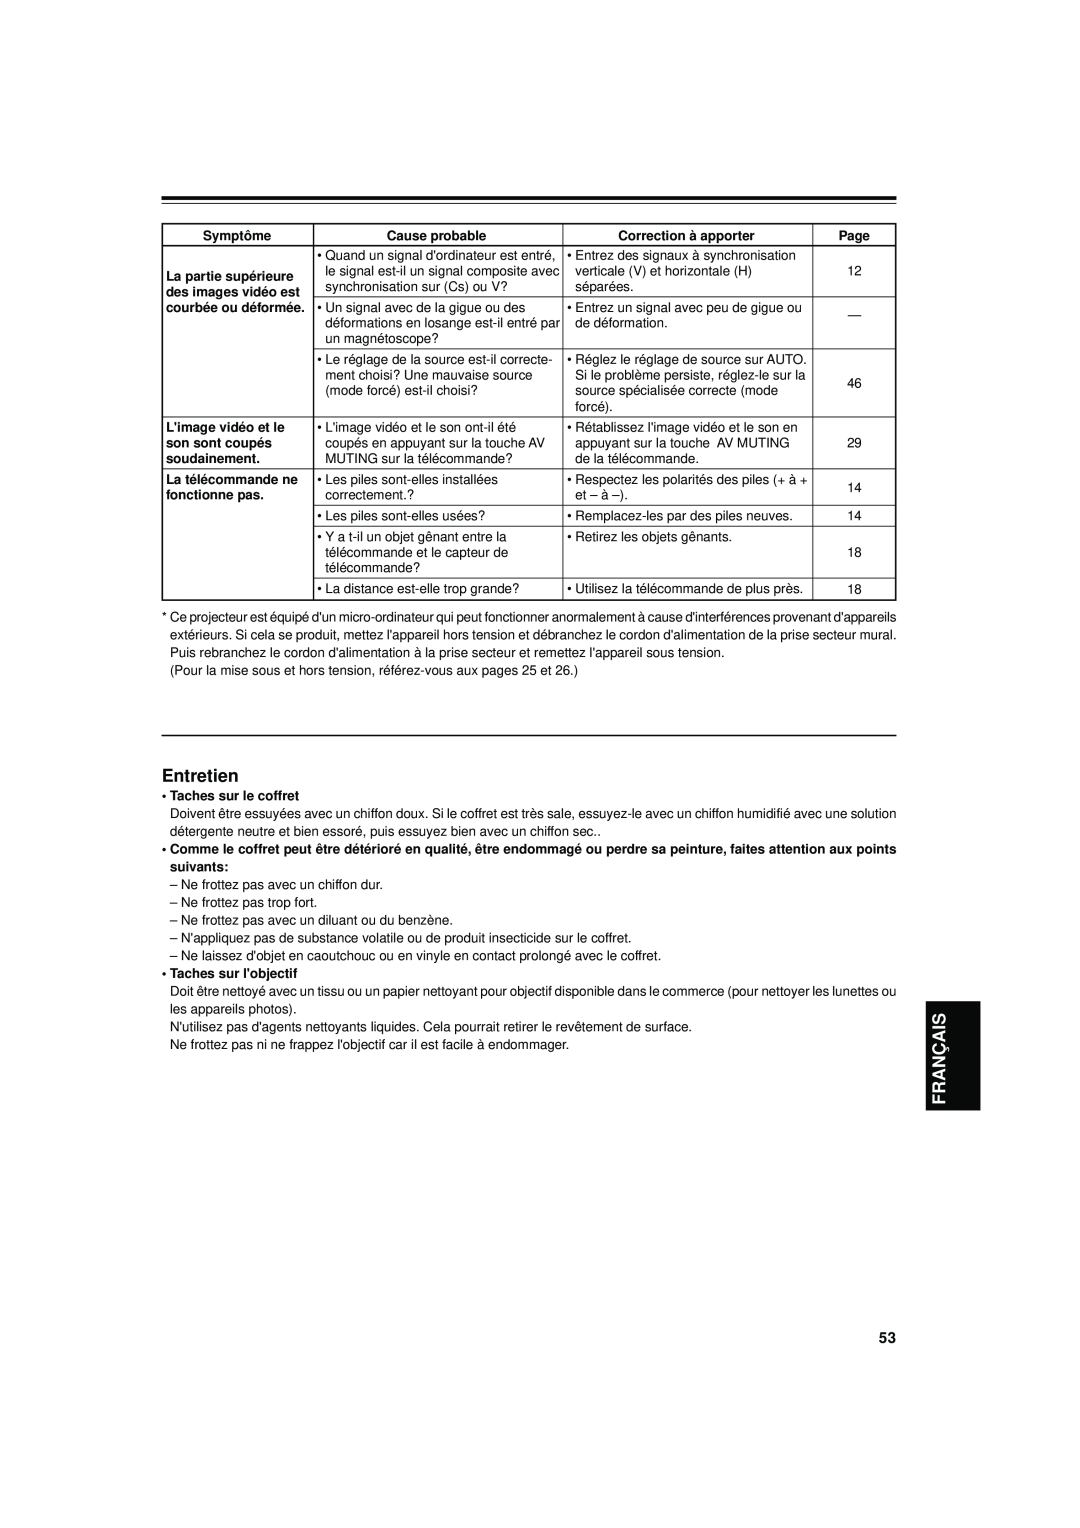 JVC DLA-S15U manual Entretien, Français, Symptôme, Cause probable, Correction à apporter, Page, La partie supérieure 